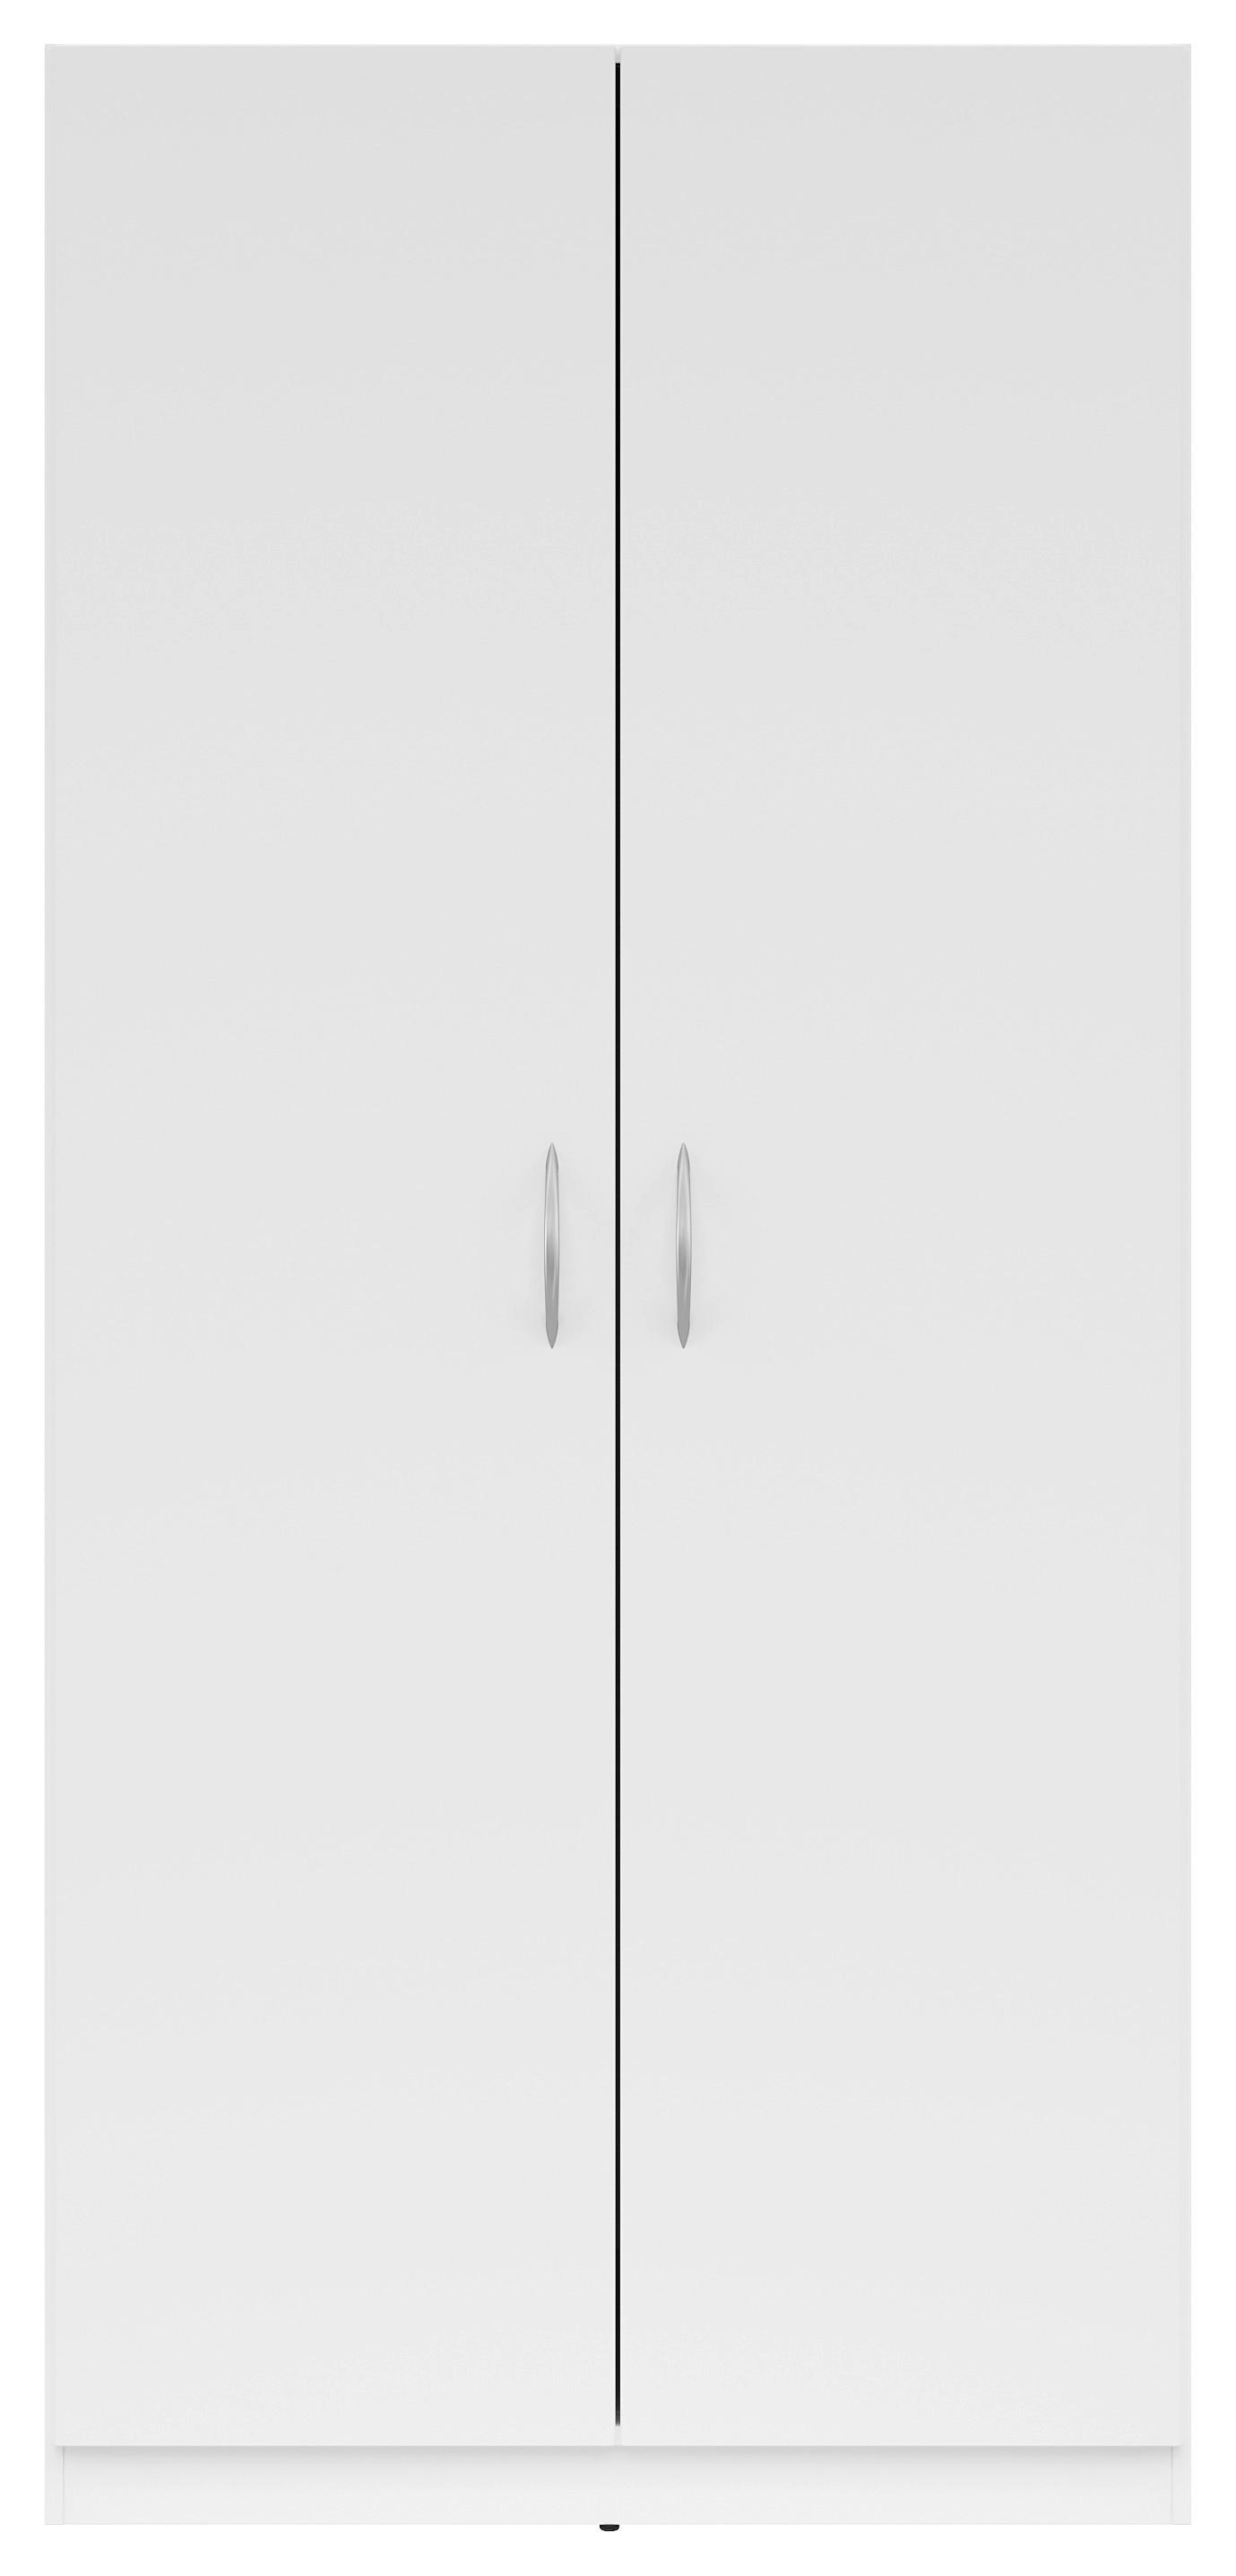 KLEIDERSCHRANK 91/197/54 cm 2-türig  - Silberfarben/Weiß, KONVENTIONELL, Holzwerkstoff/Kunststoff (91/197/54cm) - Boxxx